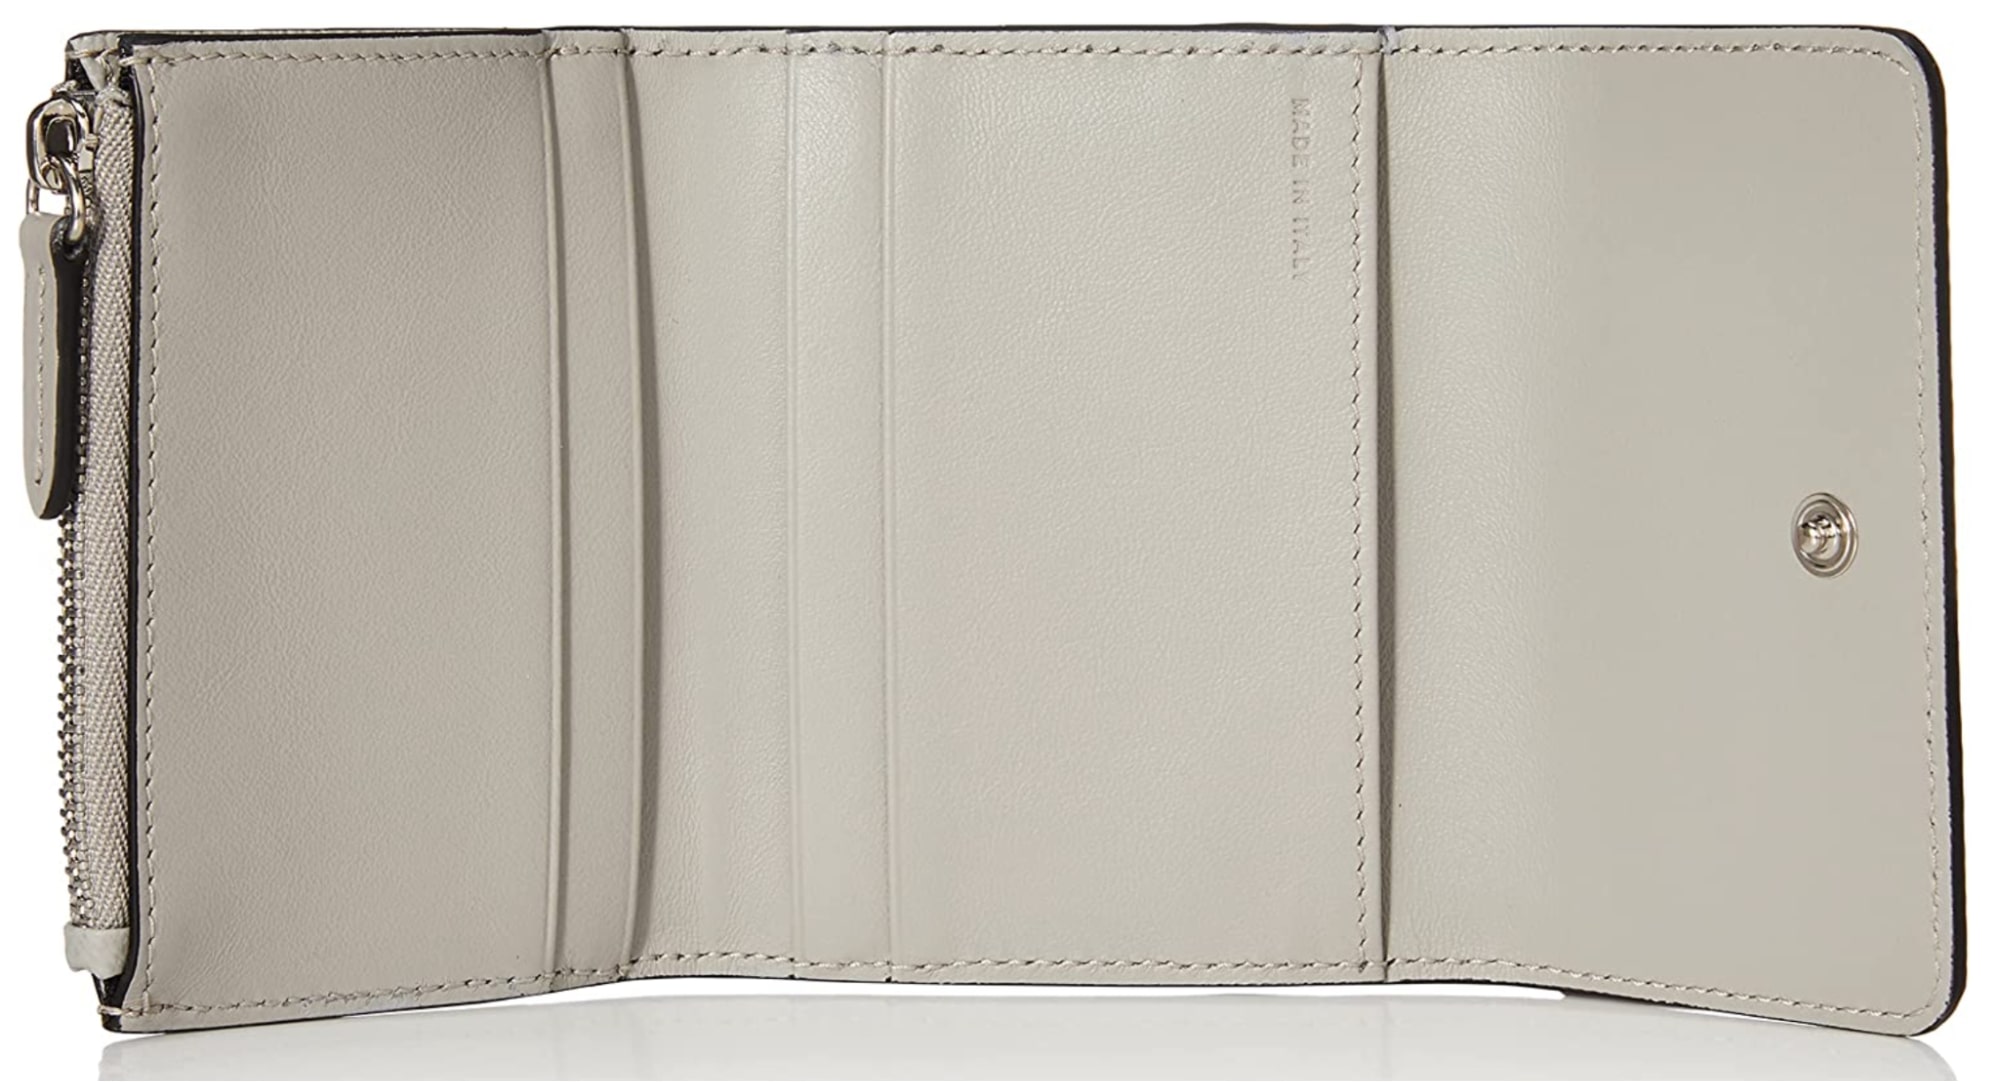 スマイソンのPanama コインウォレット三つ折り財布の内装